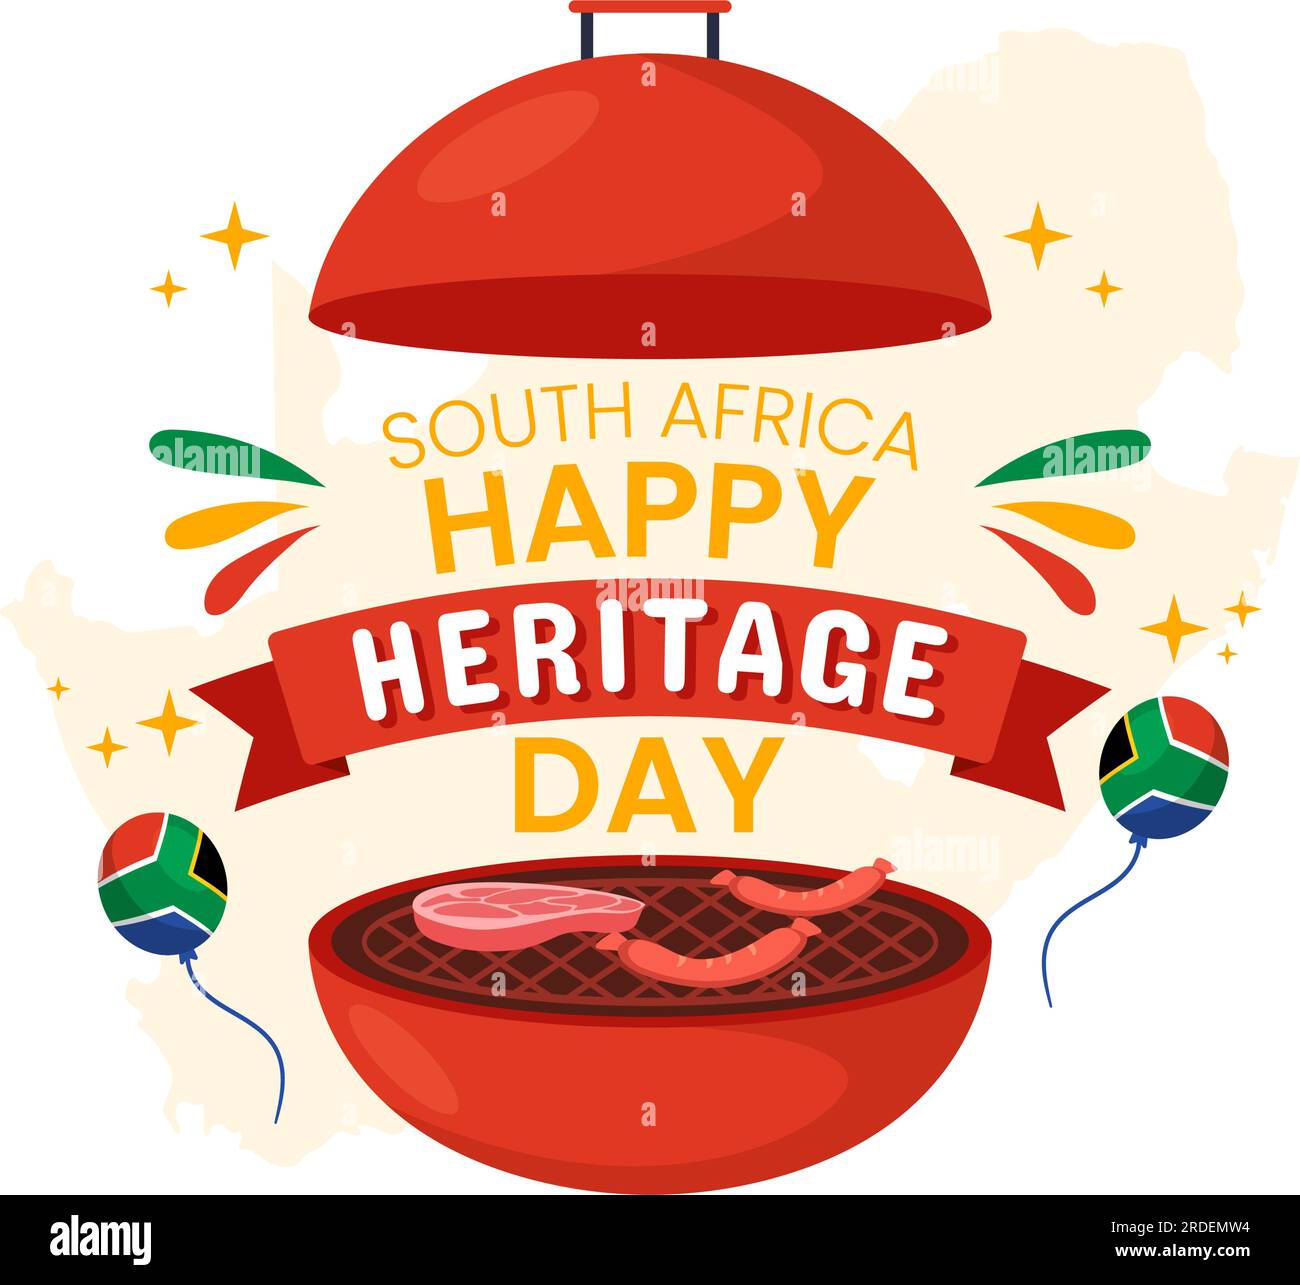 Happy Heritage Day South Africa Vector Illustration il 24 settembre con sfondo Waving Flag, onorando i modelli della cultura e delle tradizioni africane Illustrazione Vettoriale